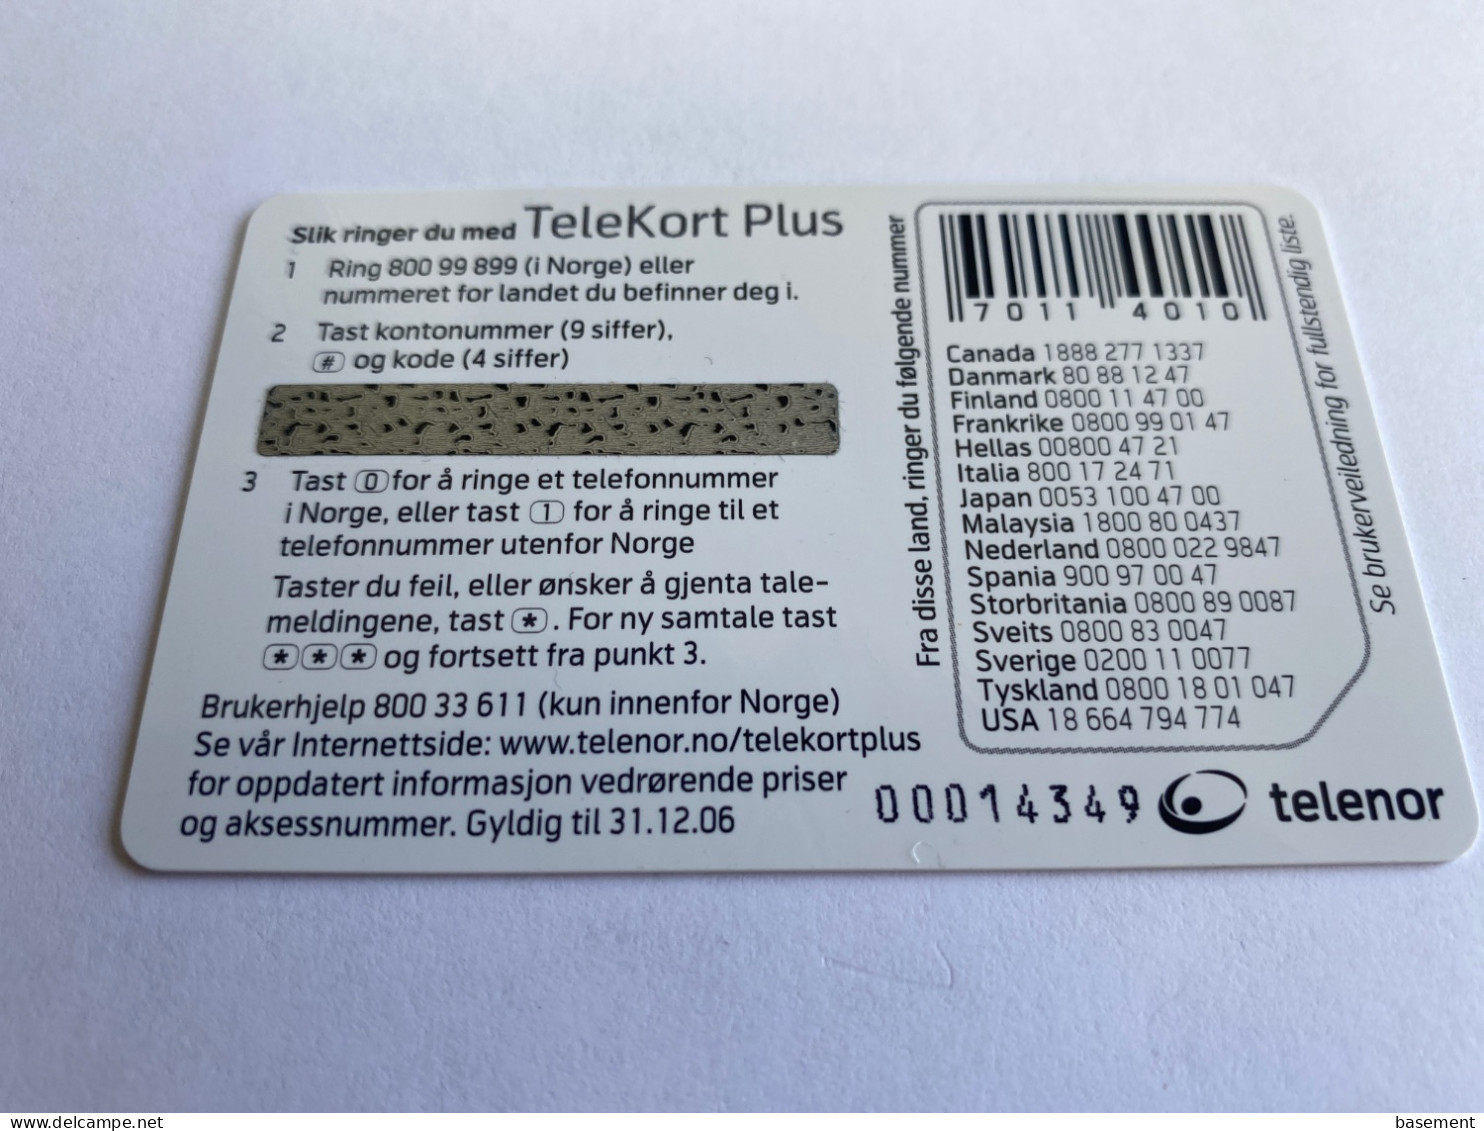 1:004 - Norway Telenor NTK 15 Year - Noorwegen